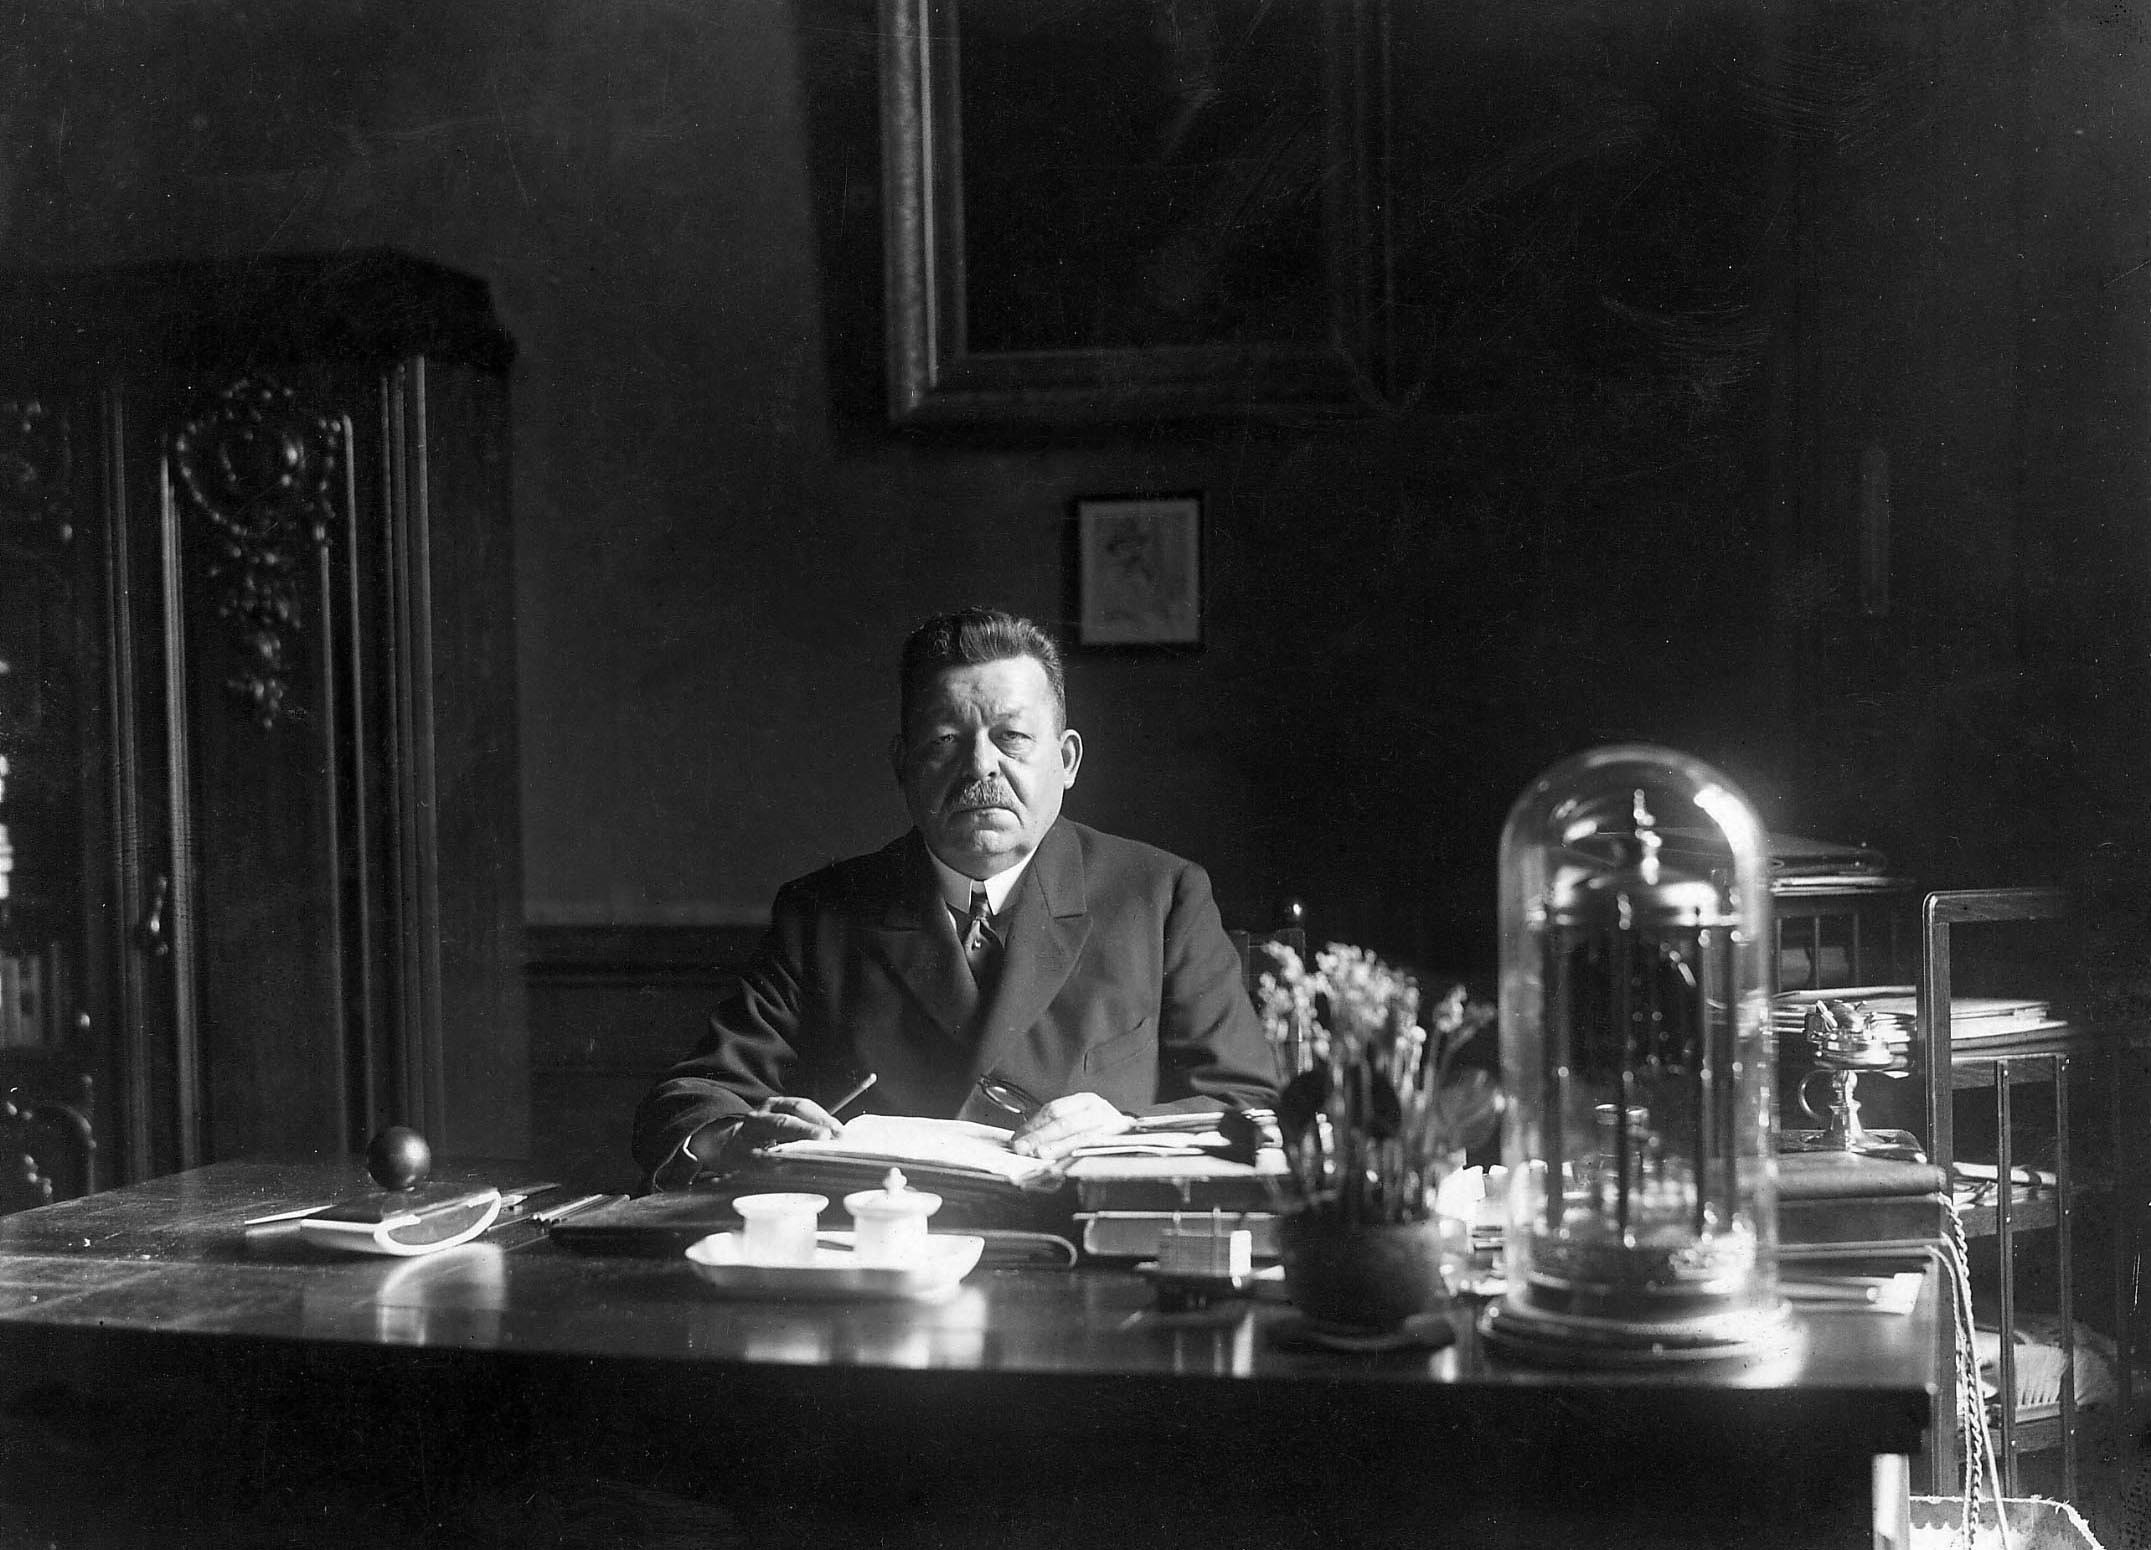 Die wahrscheinlich letzte offizielle Aufnahme Friedrich Eberts am 15.2.1925 an seinem Schreibtisch im Arbeitszimmer.